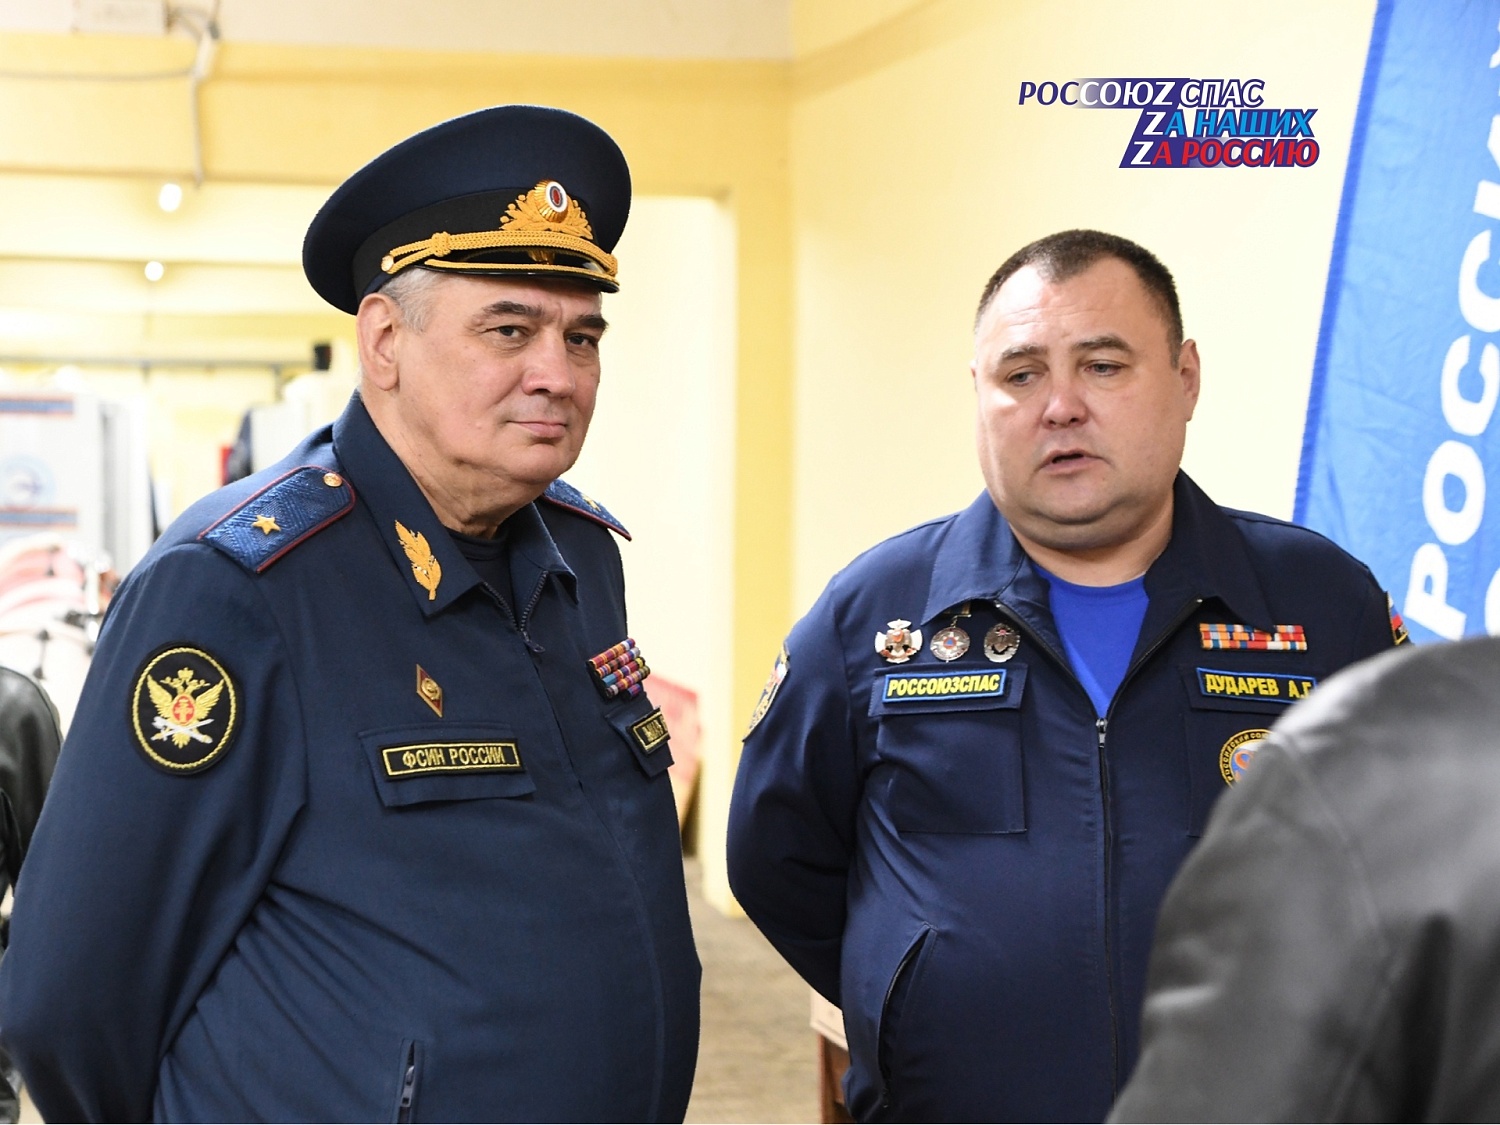 Пермское региональное отделение РОССОЮЗСПАС продолжает принимать и формировать груз для отправки нуждающимся на Донбассе